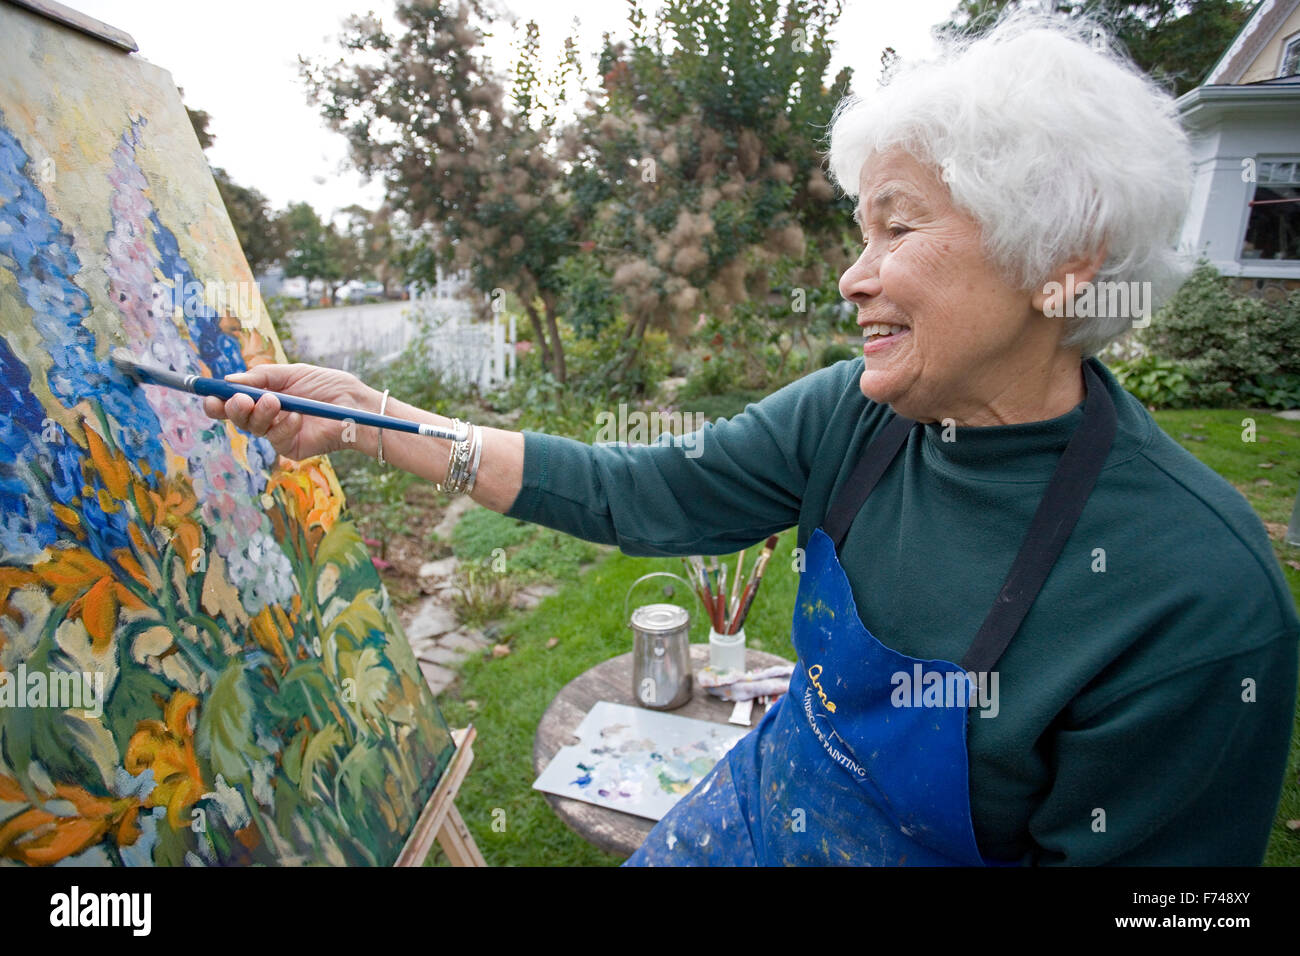 Personnes âgées en peinture artiste jardin Banque D'Images